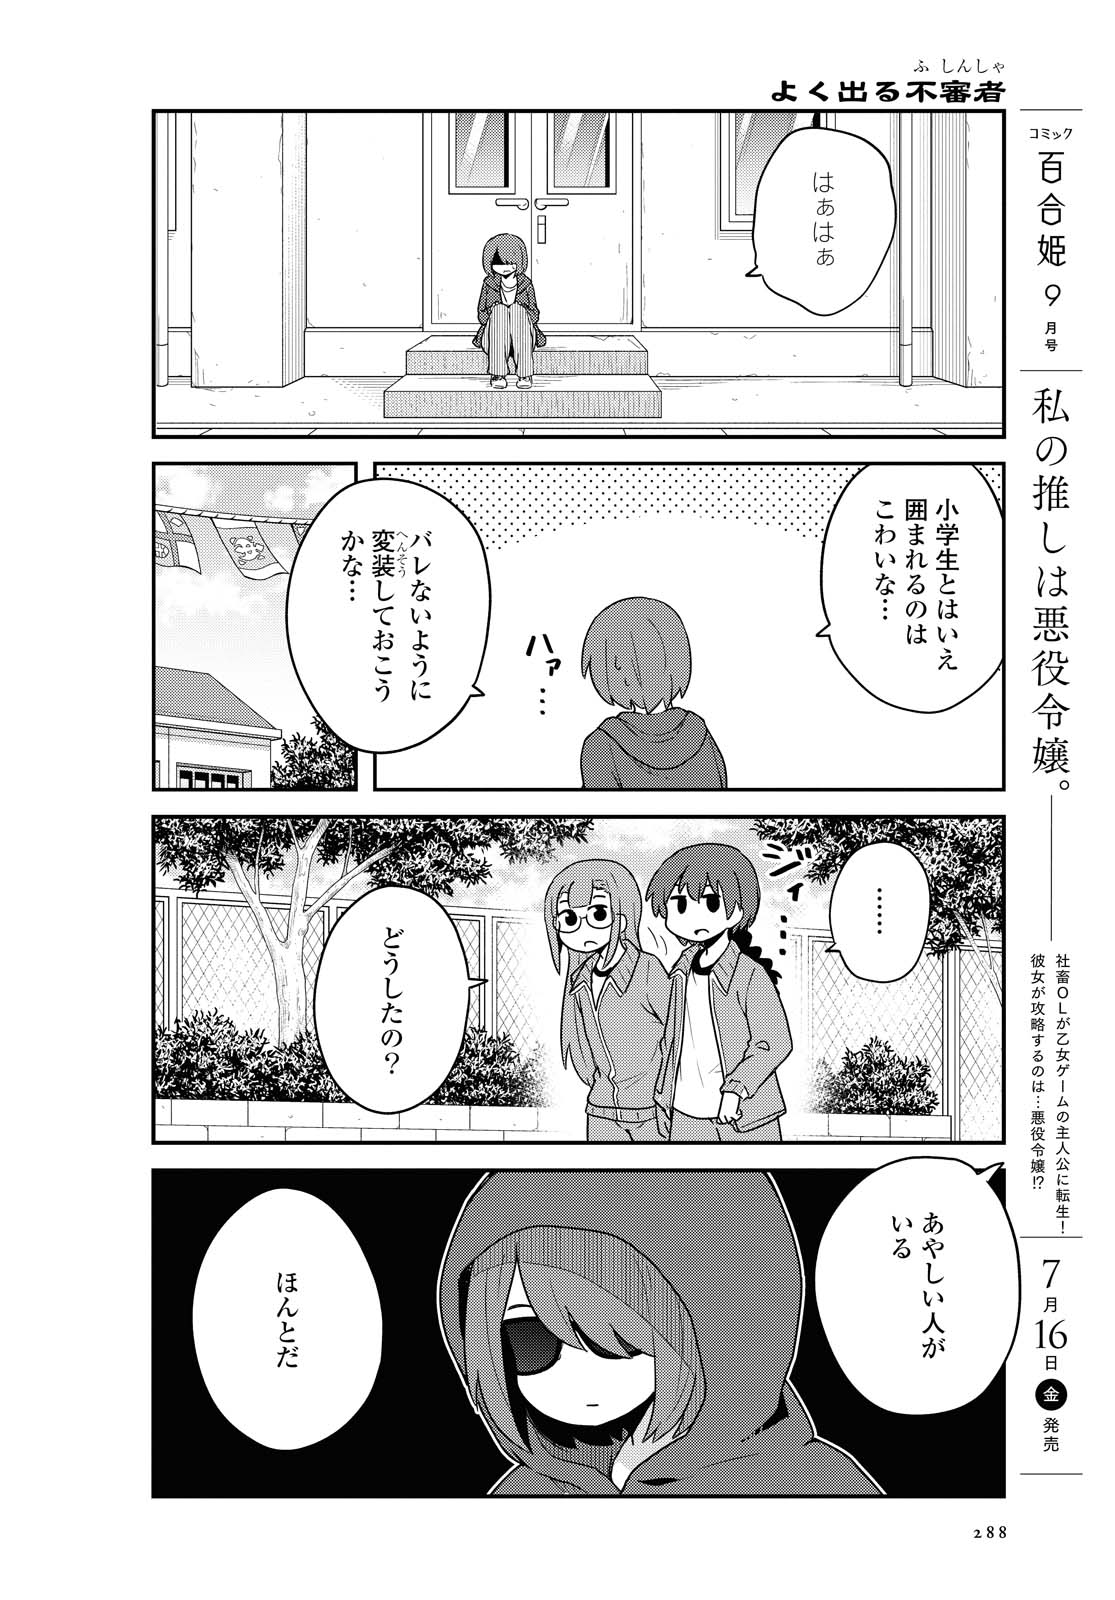 Watashi ni Tenshi ga Maiorita! - Chapter 84 - Page 4